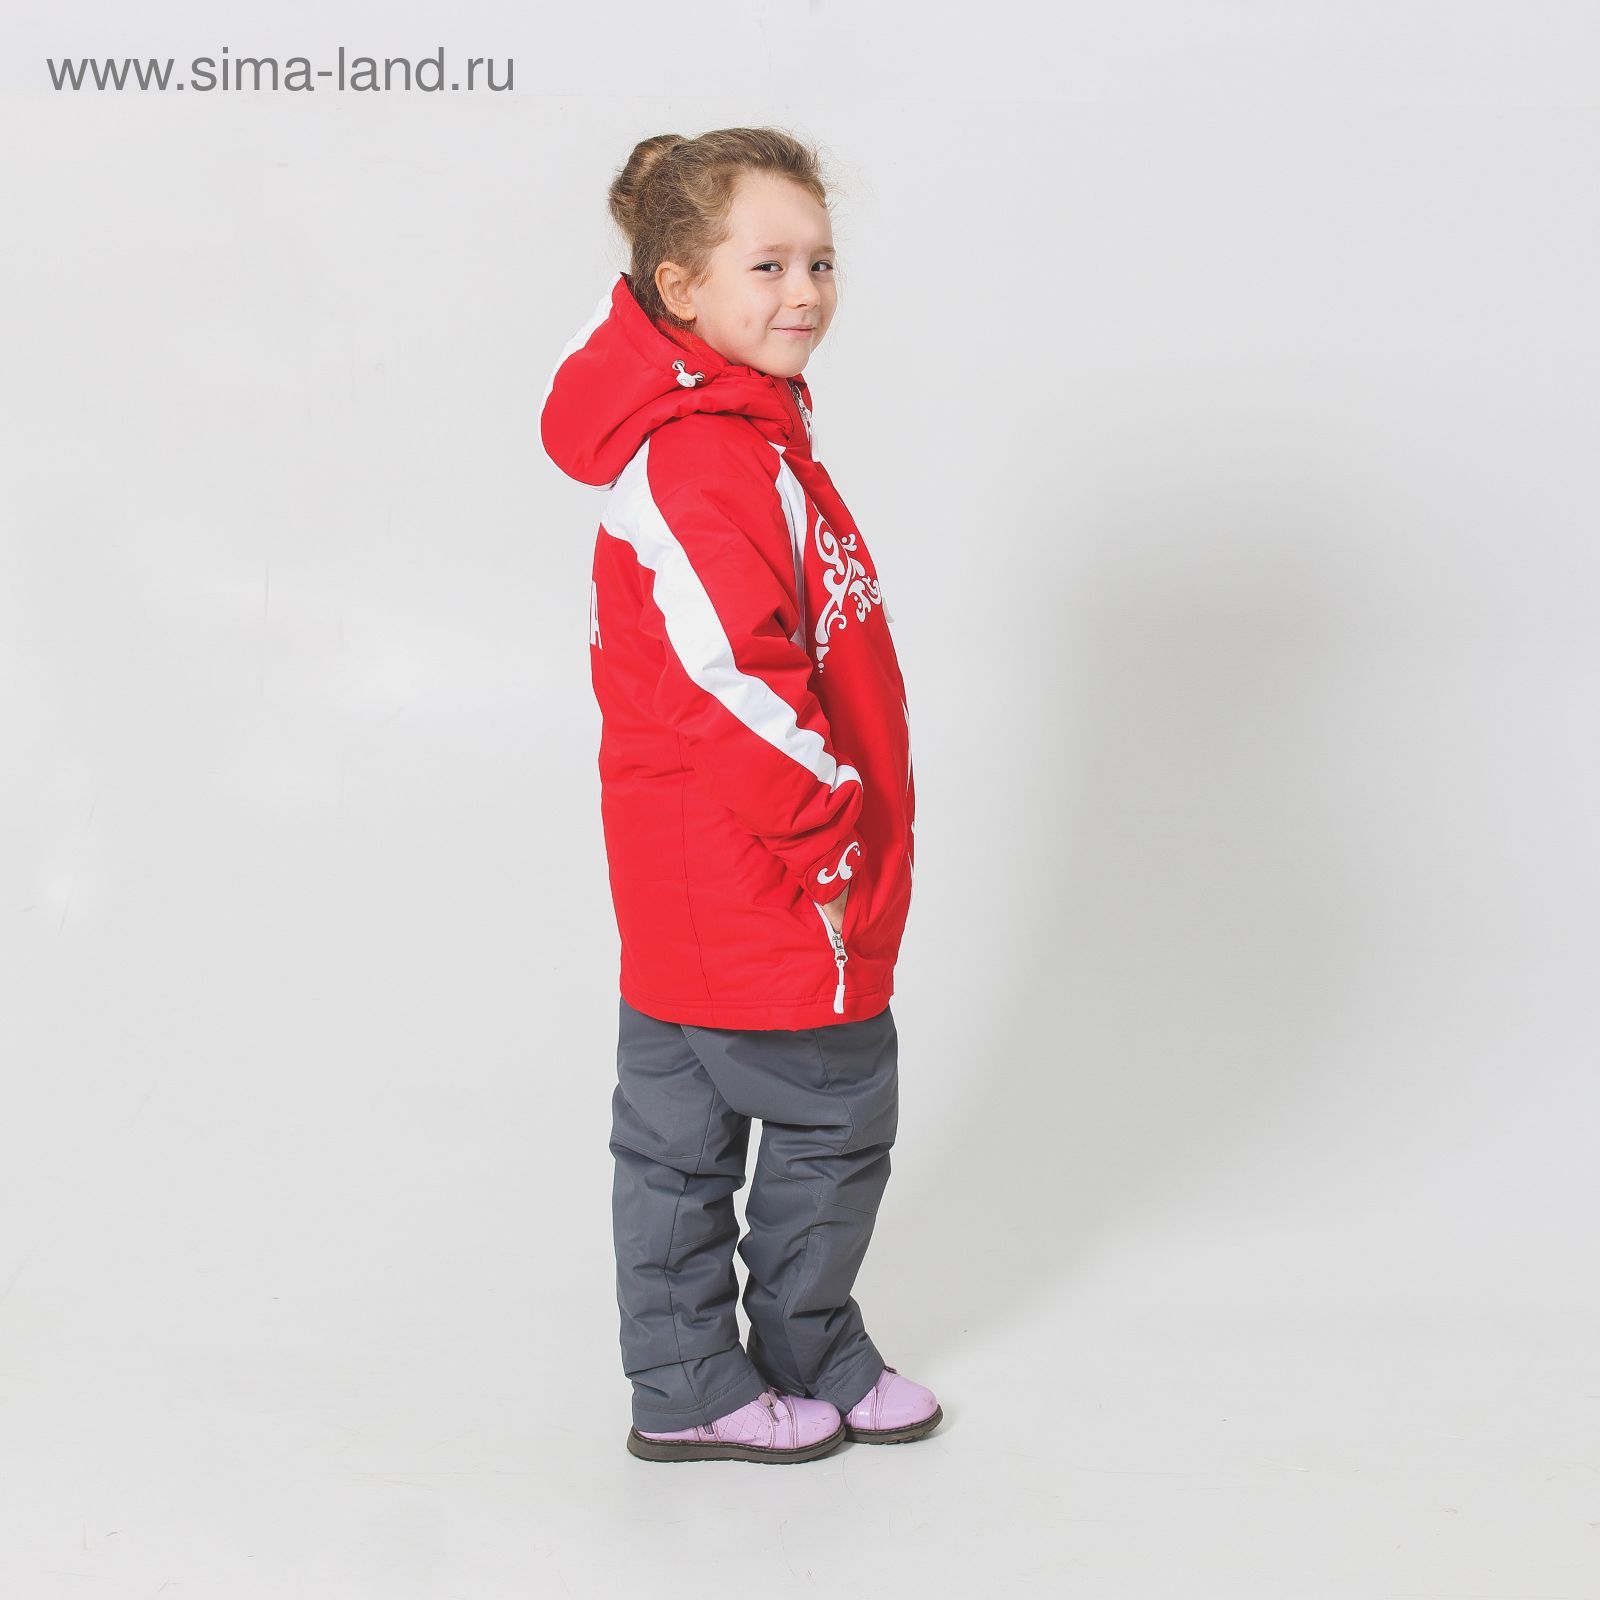 Костюм детский ( куртка+штаны) ONLITOP,куртка-красно/белая; штаны-серые (р. 34)